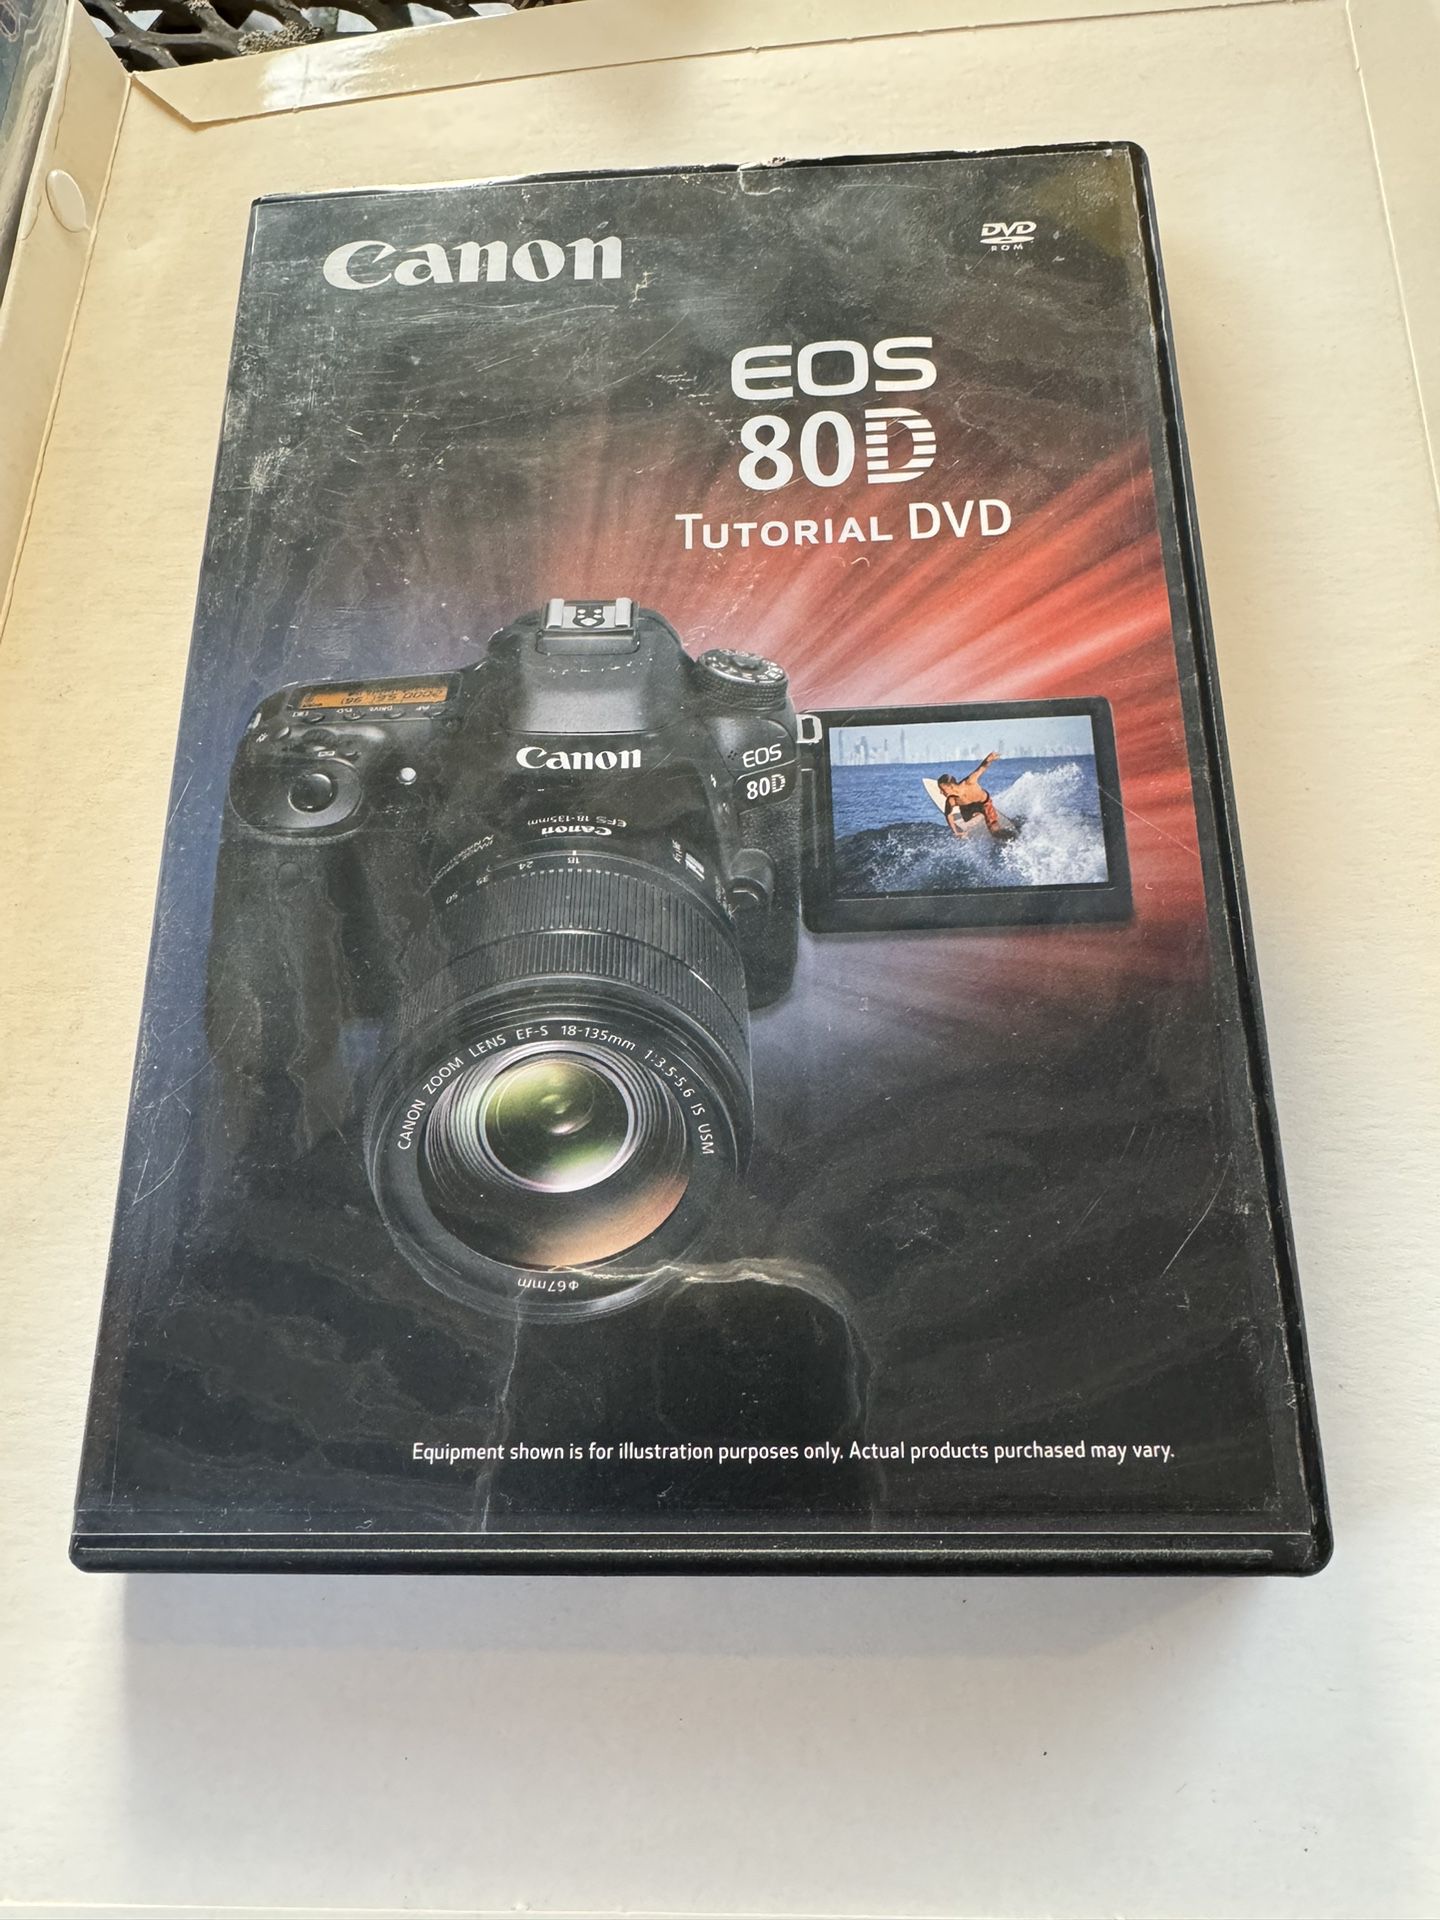 Preowned Canon EOS 80D Tutorial DVD 